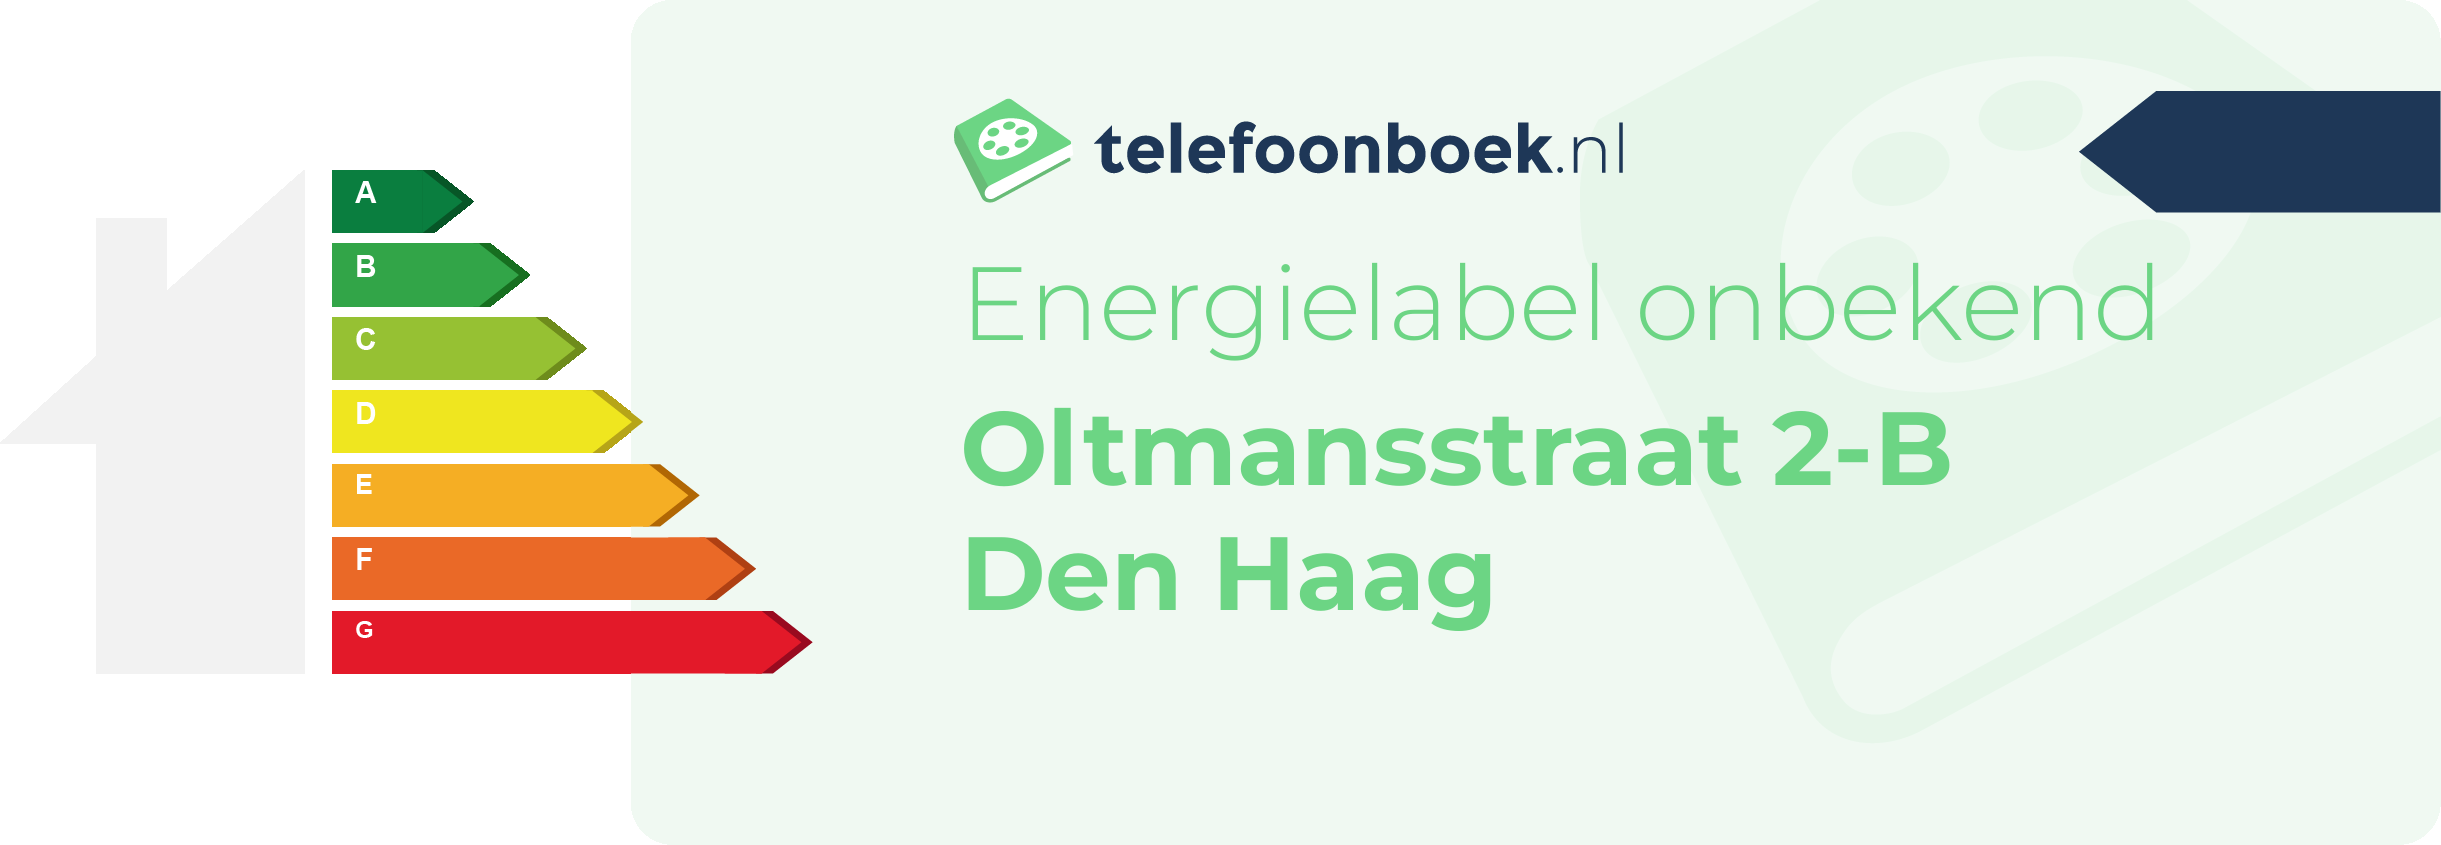 Energielabel Oltmansstraat 2-B Den Haag